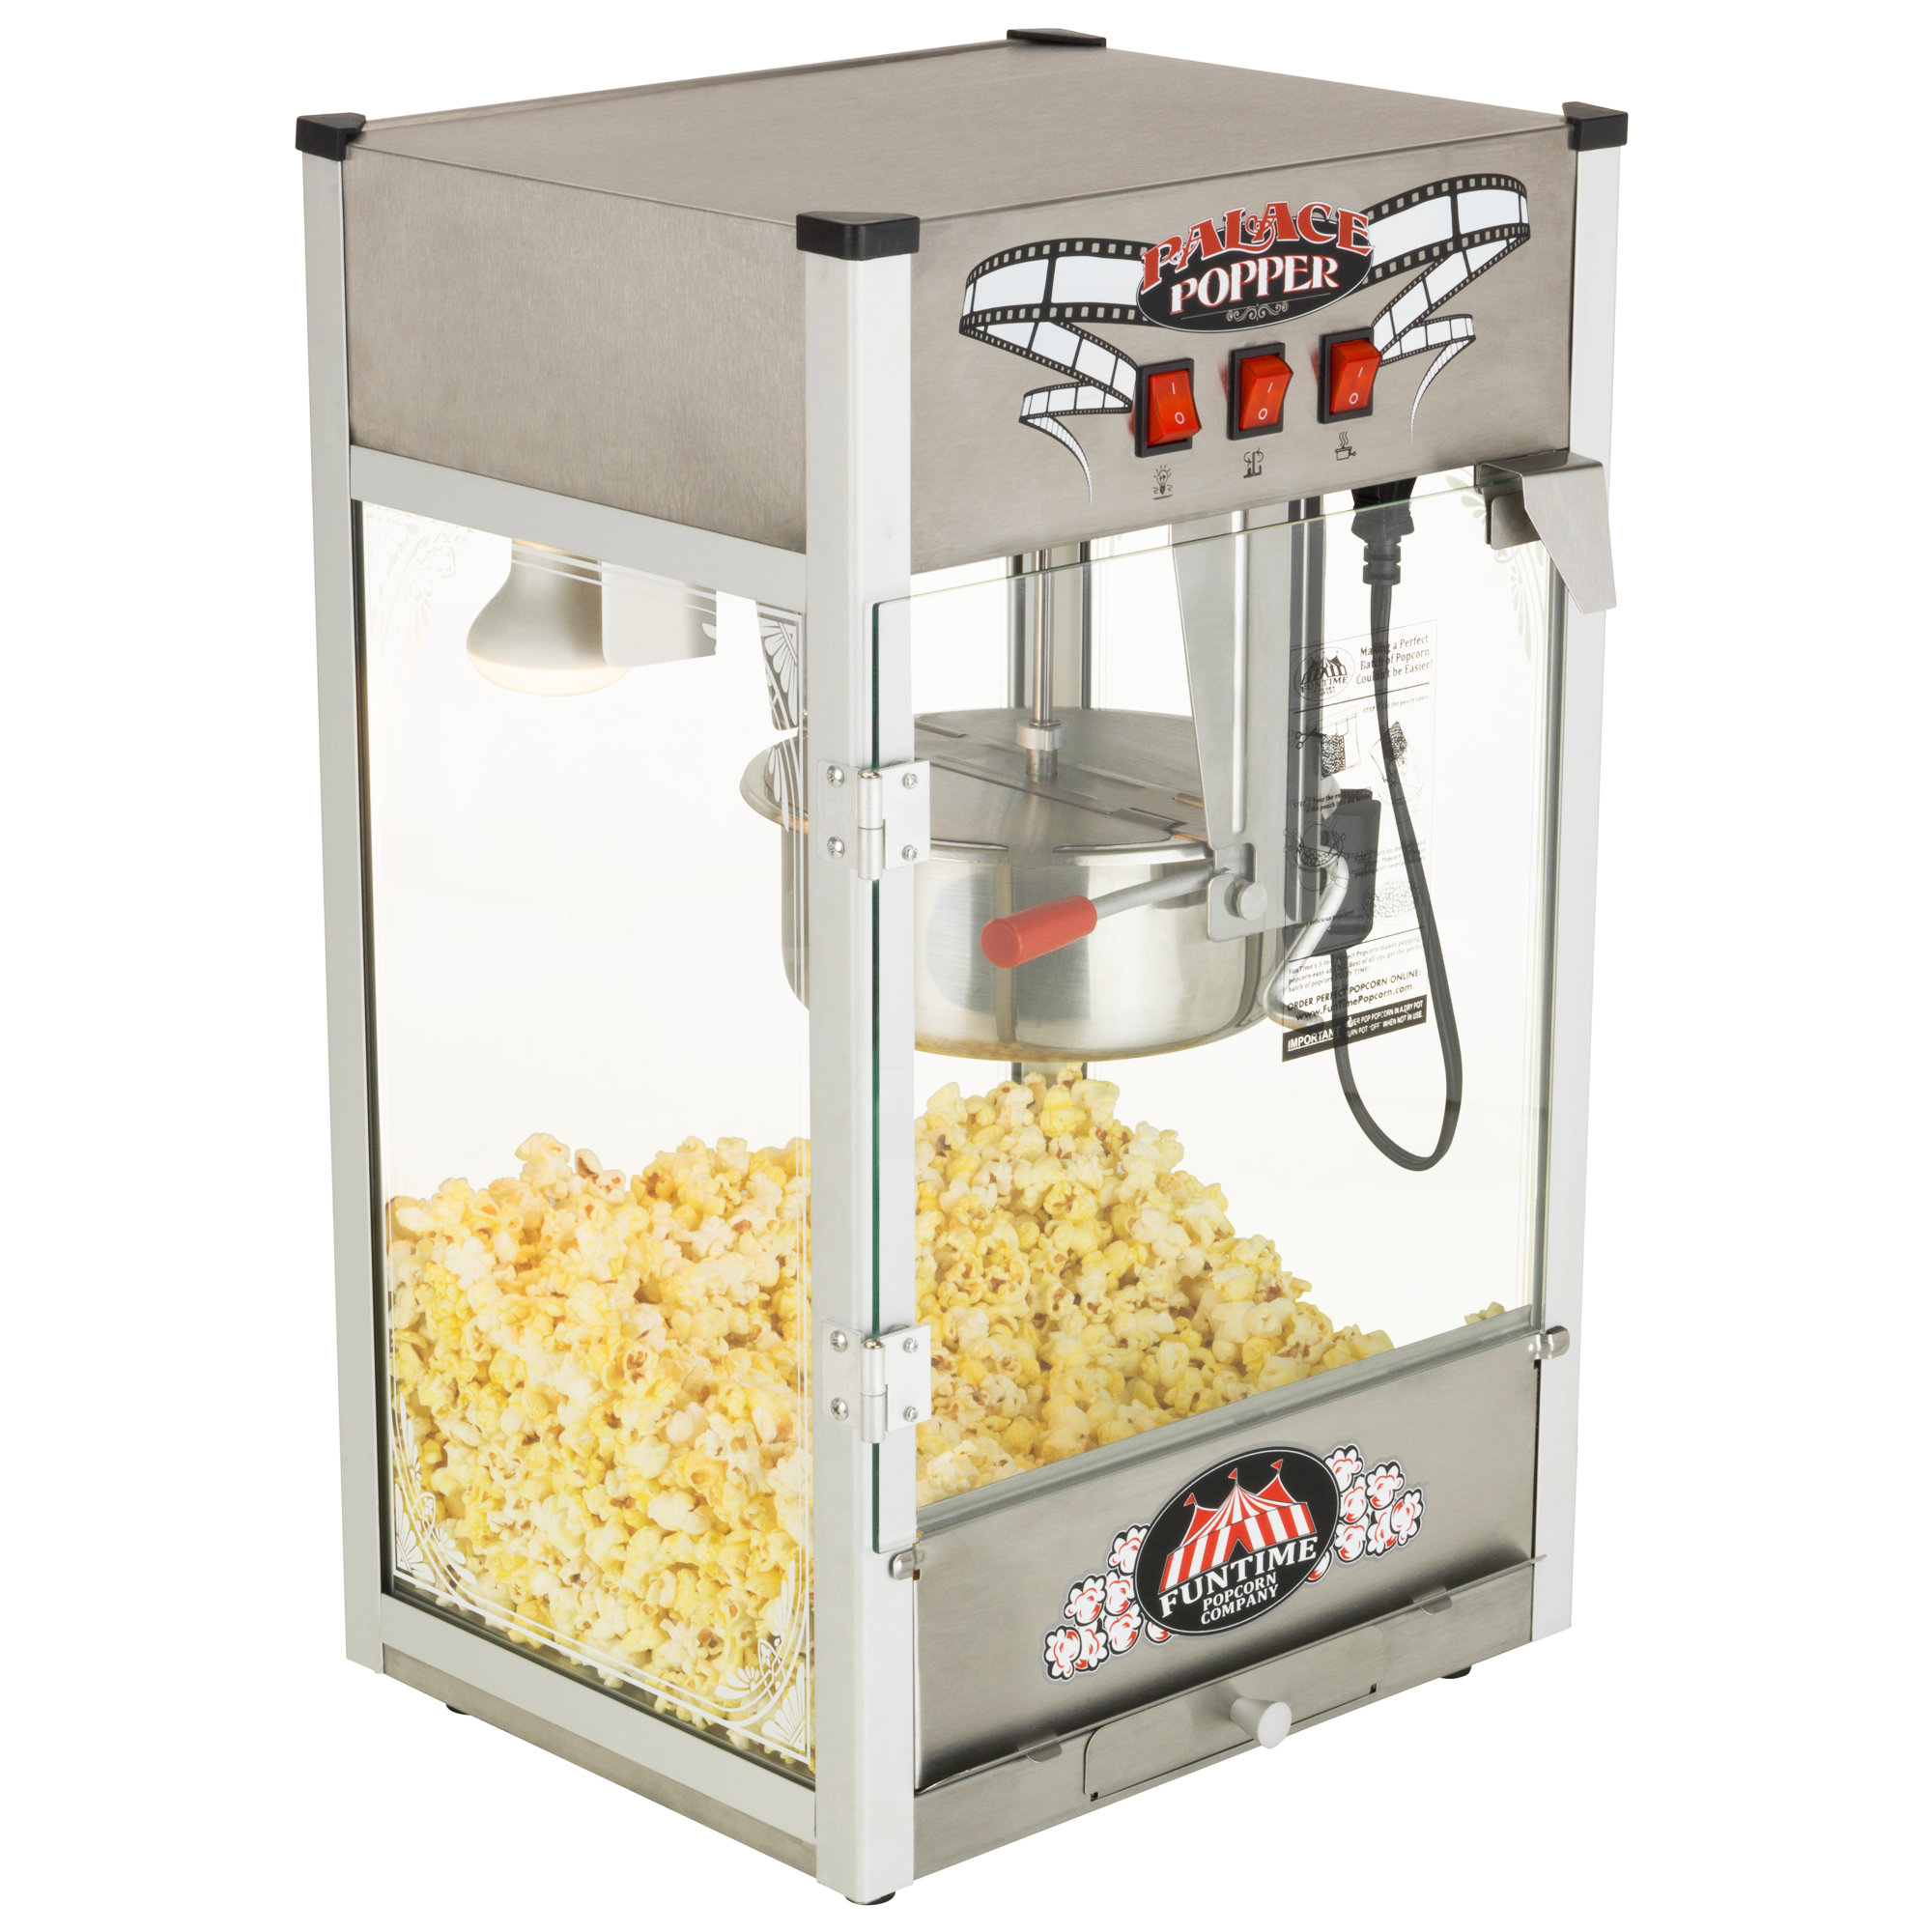 Popcorn Supplies: Popcorn Kernals, Accessories, & More